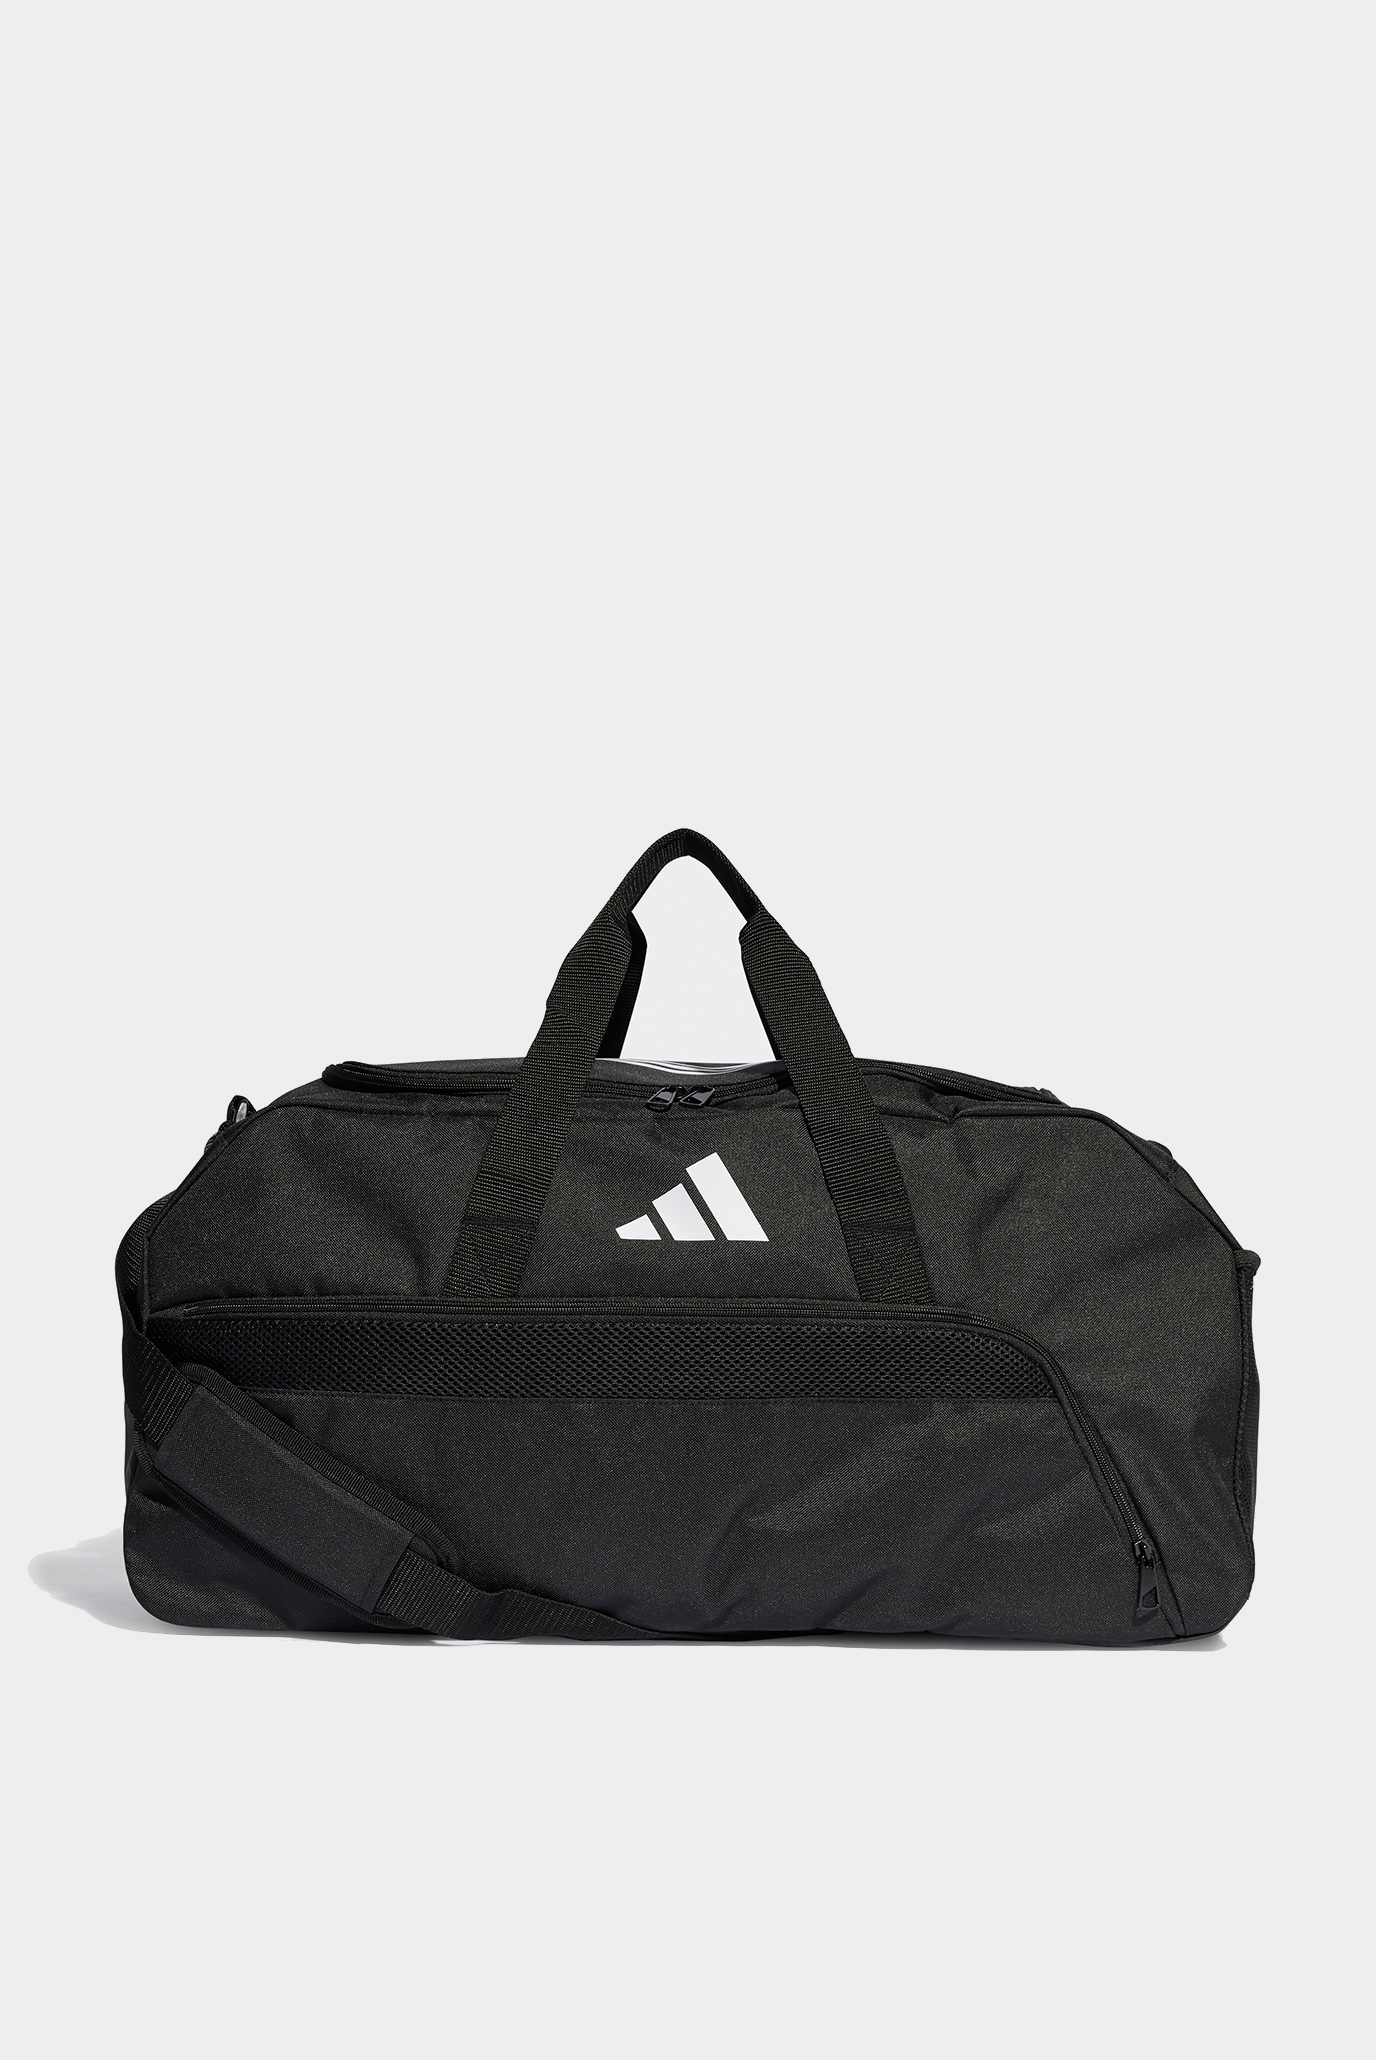 Черная спортивная сумка Tiro League Duffel Bag Medium 1